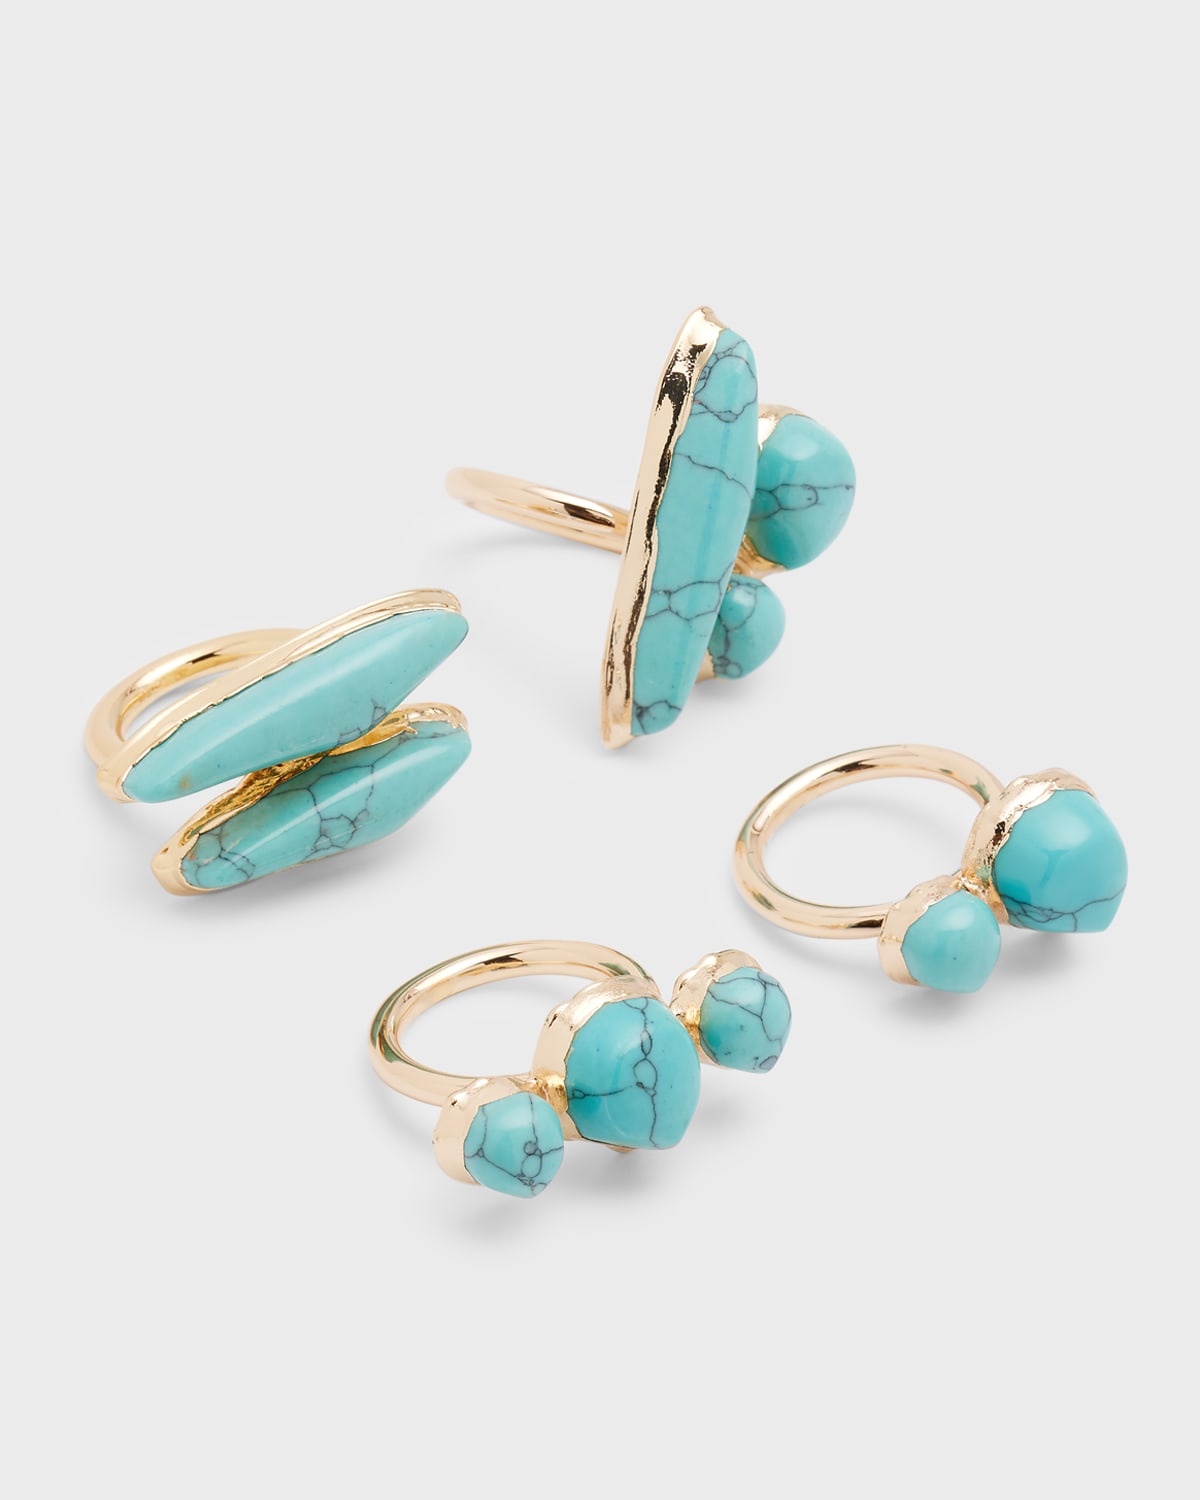 Suri Turquoise Rings, Set of 4